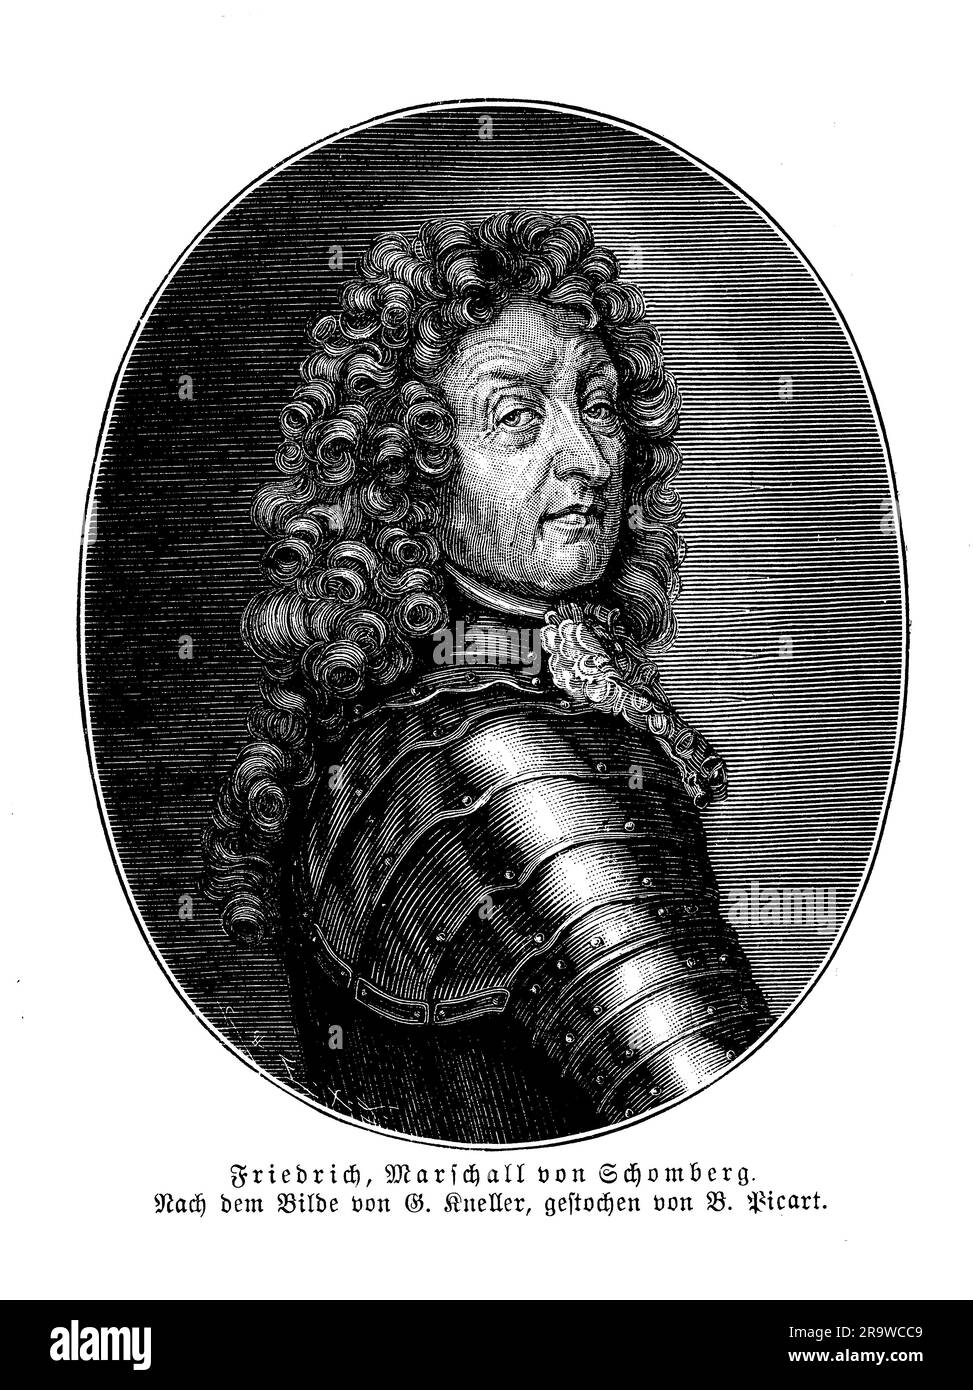 Friedrich von Schomberg, également connu sous le nom de Frédéric Armand de Schomberg, était un soldat et homme d'État d'origine allemande qui a servi dans les armées de plusieurs pays européens au cours du XVIIe siècle. Il a commencé sa carrière militaire au service de la République néerlandaise et a ensuite servi de général dans les armées de France et du Portugal. Schomberg est surtout connu pour son rôle dans la Révolution glorieuse de 1688, quand il a dirigé une armée de soldats anglais, hollandais et Huguenot contre James II en soutien de Guillaume d'Orange. Il a ensuite été nommé commandant en chef de l'armée de William en Irlande Banque D'Images